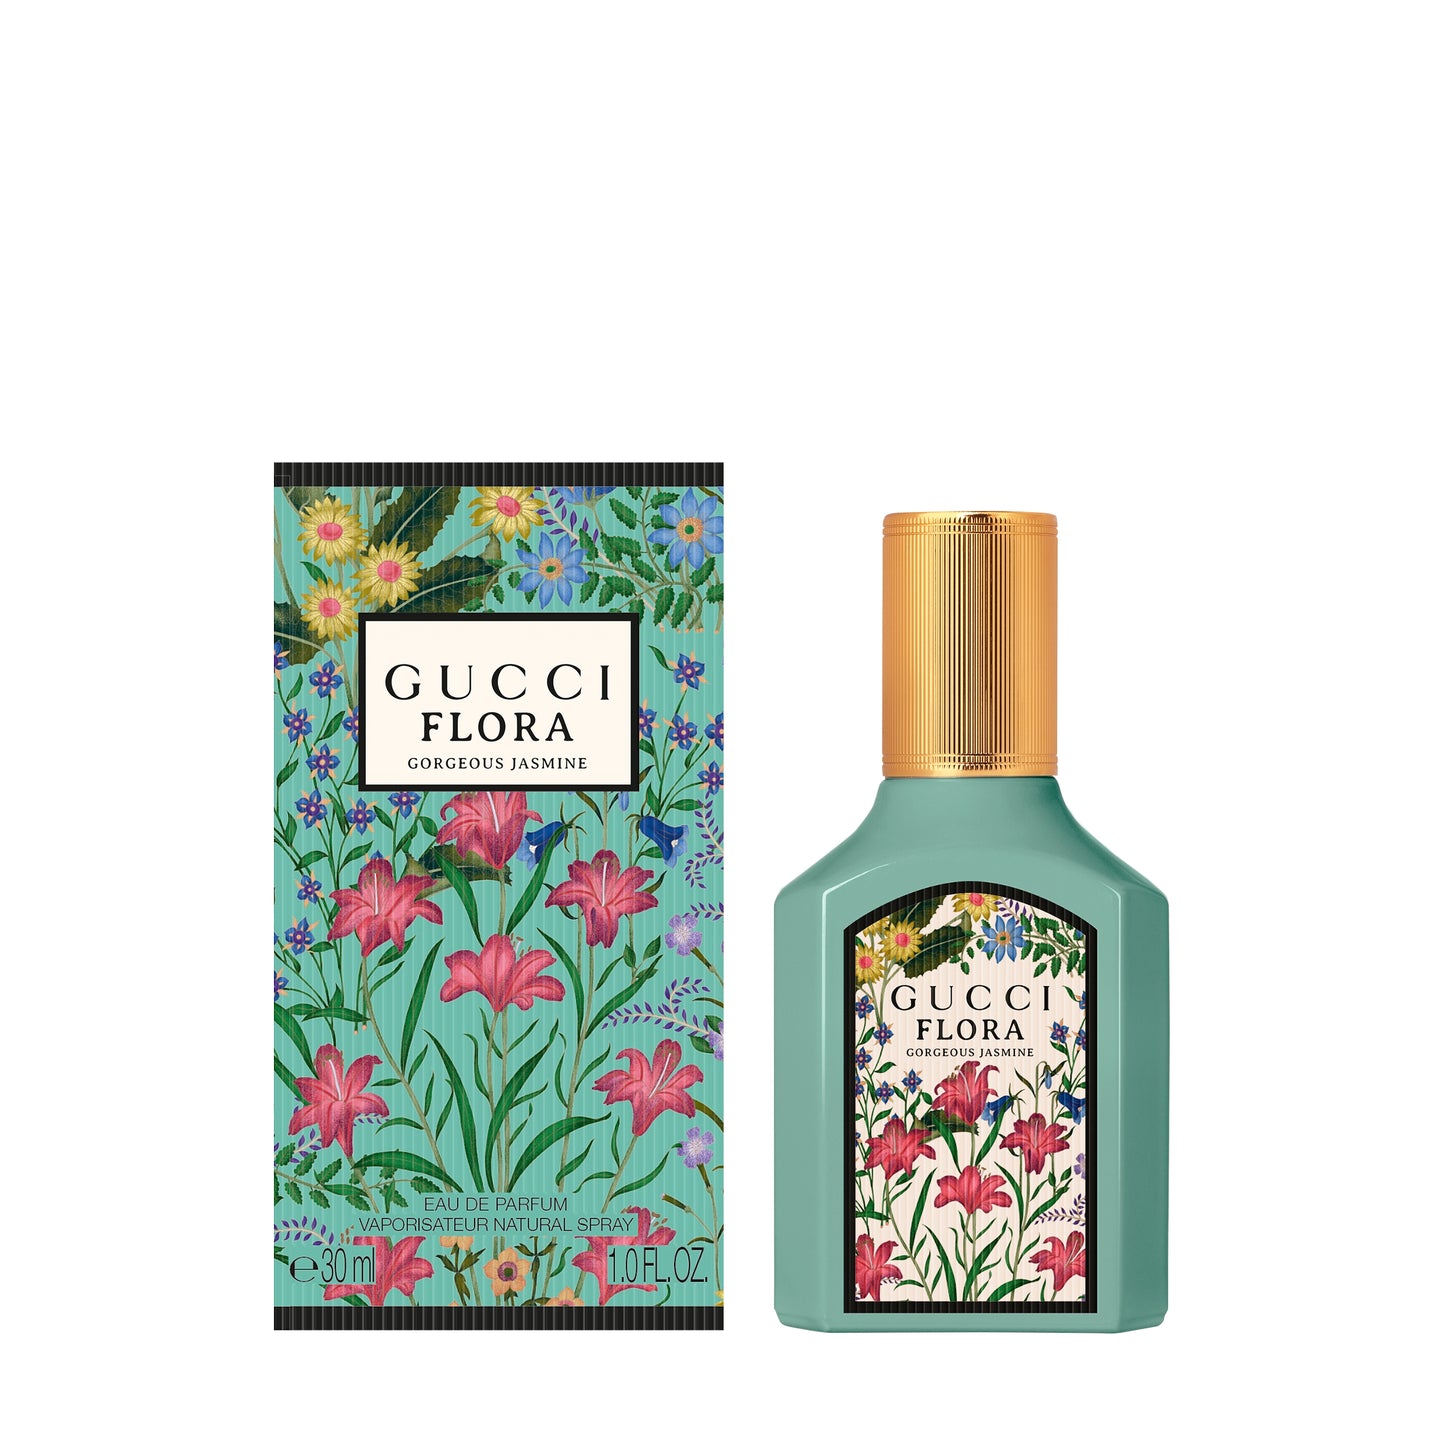 Gucci Flora Gorgeous Jasmin Eau de parfum 30 ML